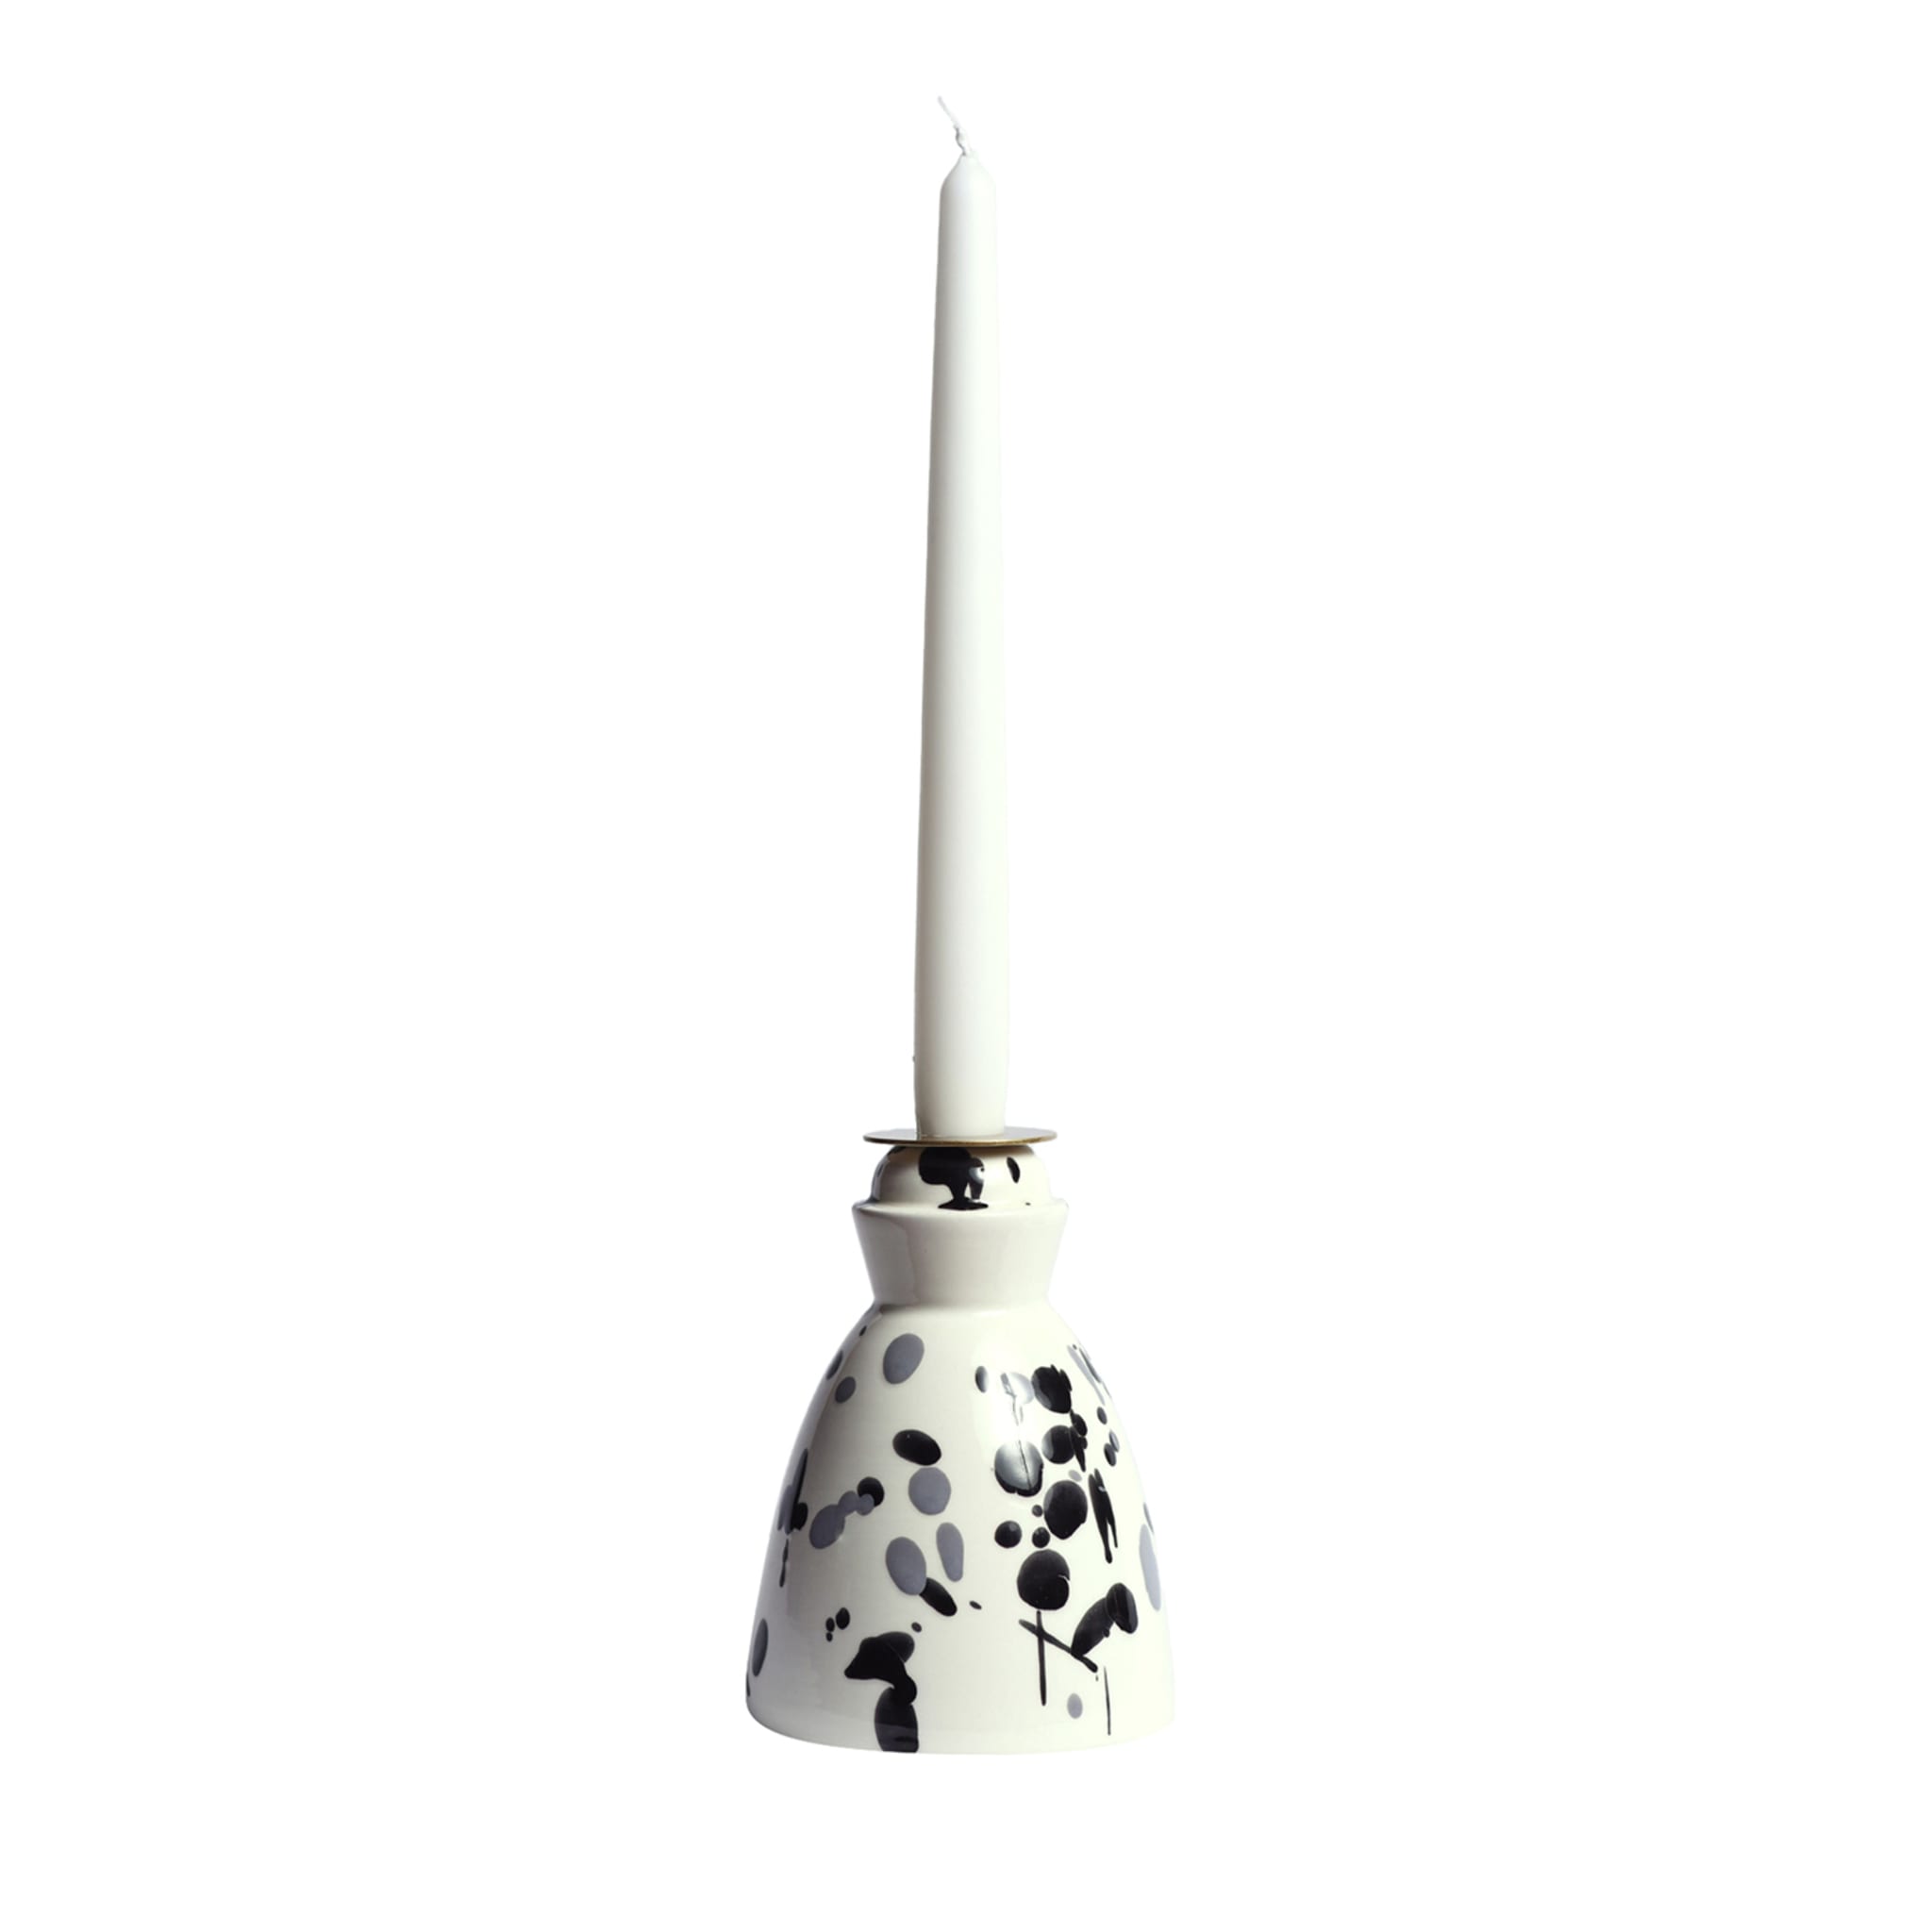 Schwarz-weißer Keramik-Kerzenständer mit 4 Bienenwachskerzen - Hauptansicht